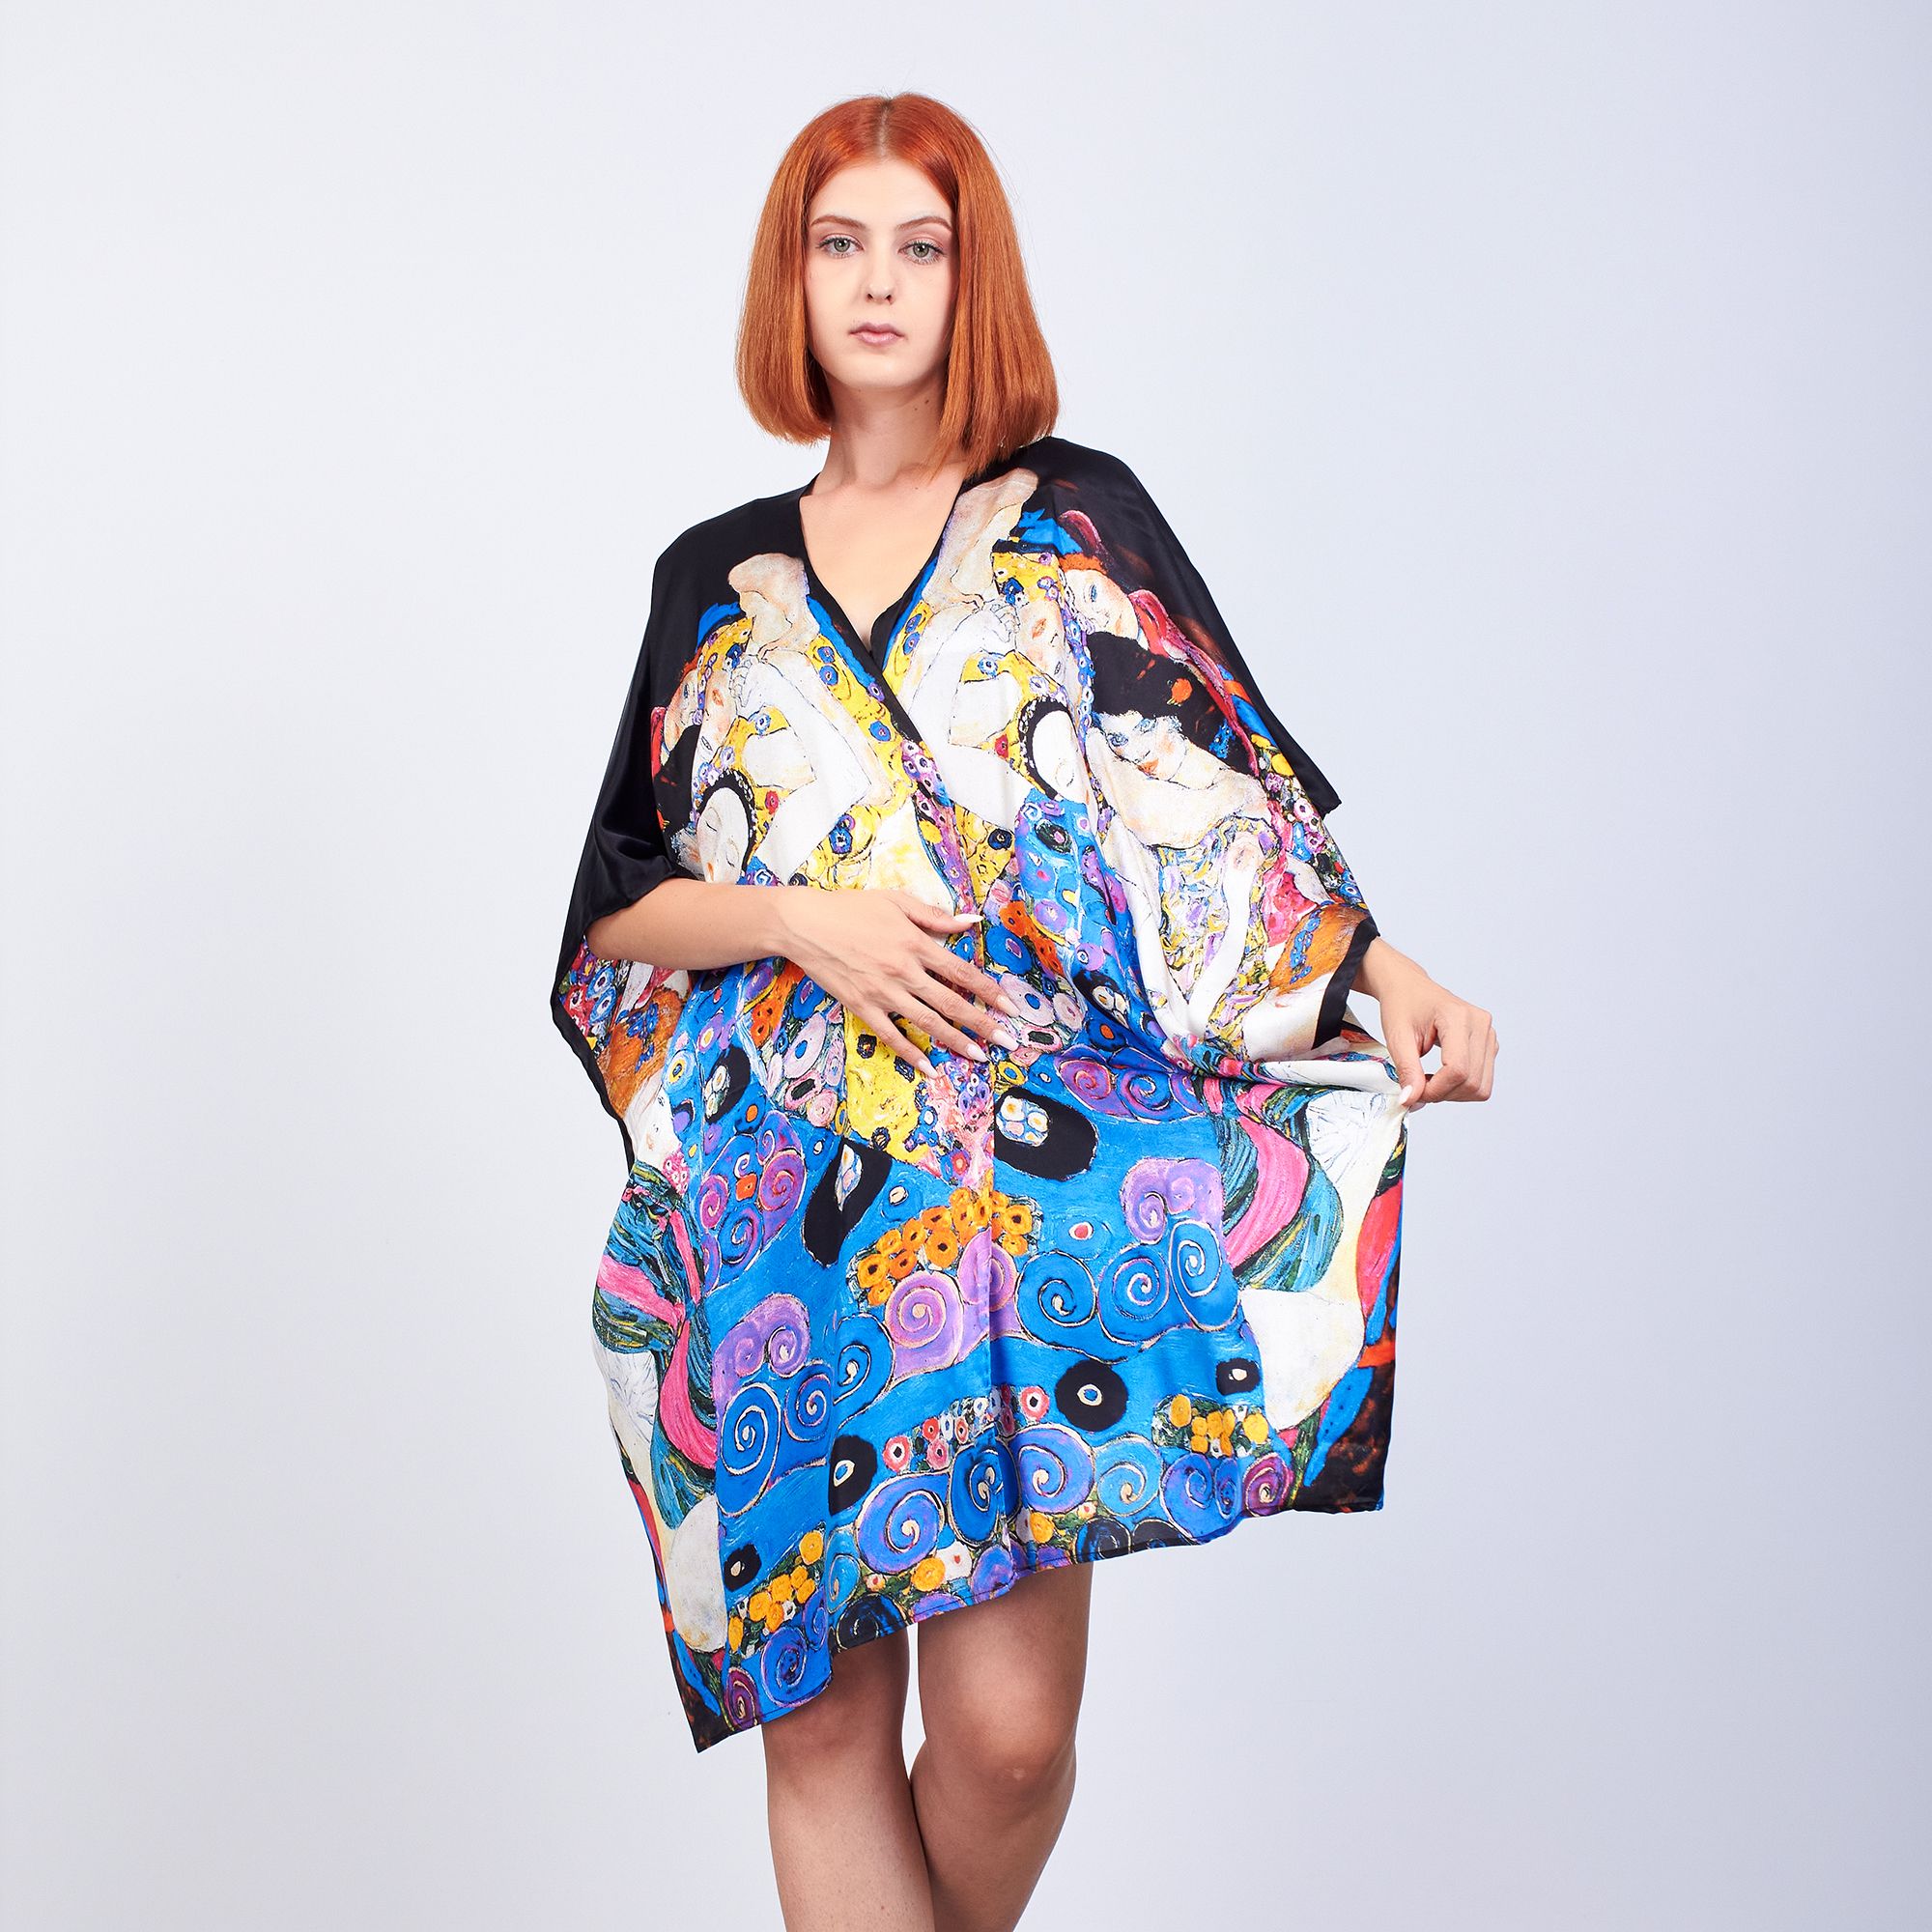 ألبسة كيمونو حريري ١٠٠٪؜ قصير "وشاح للشاطئ" | Gustav Klimt The Virgins